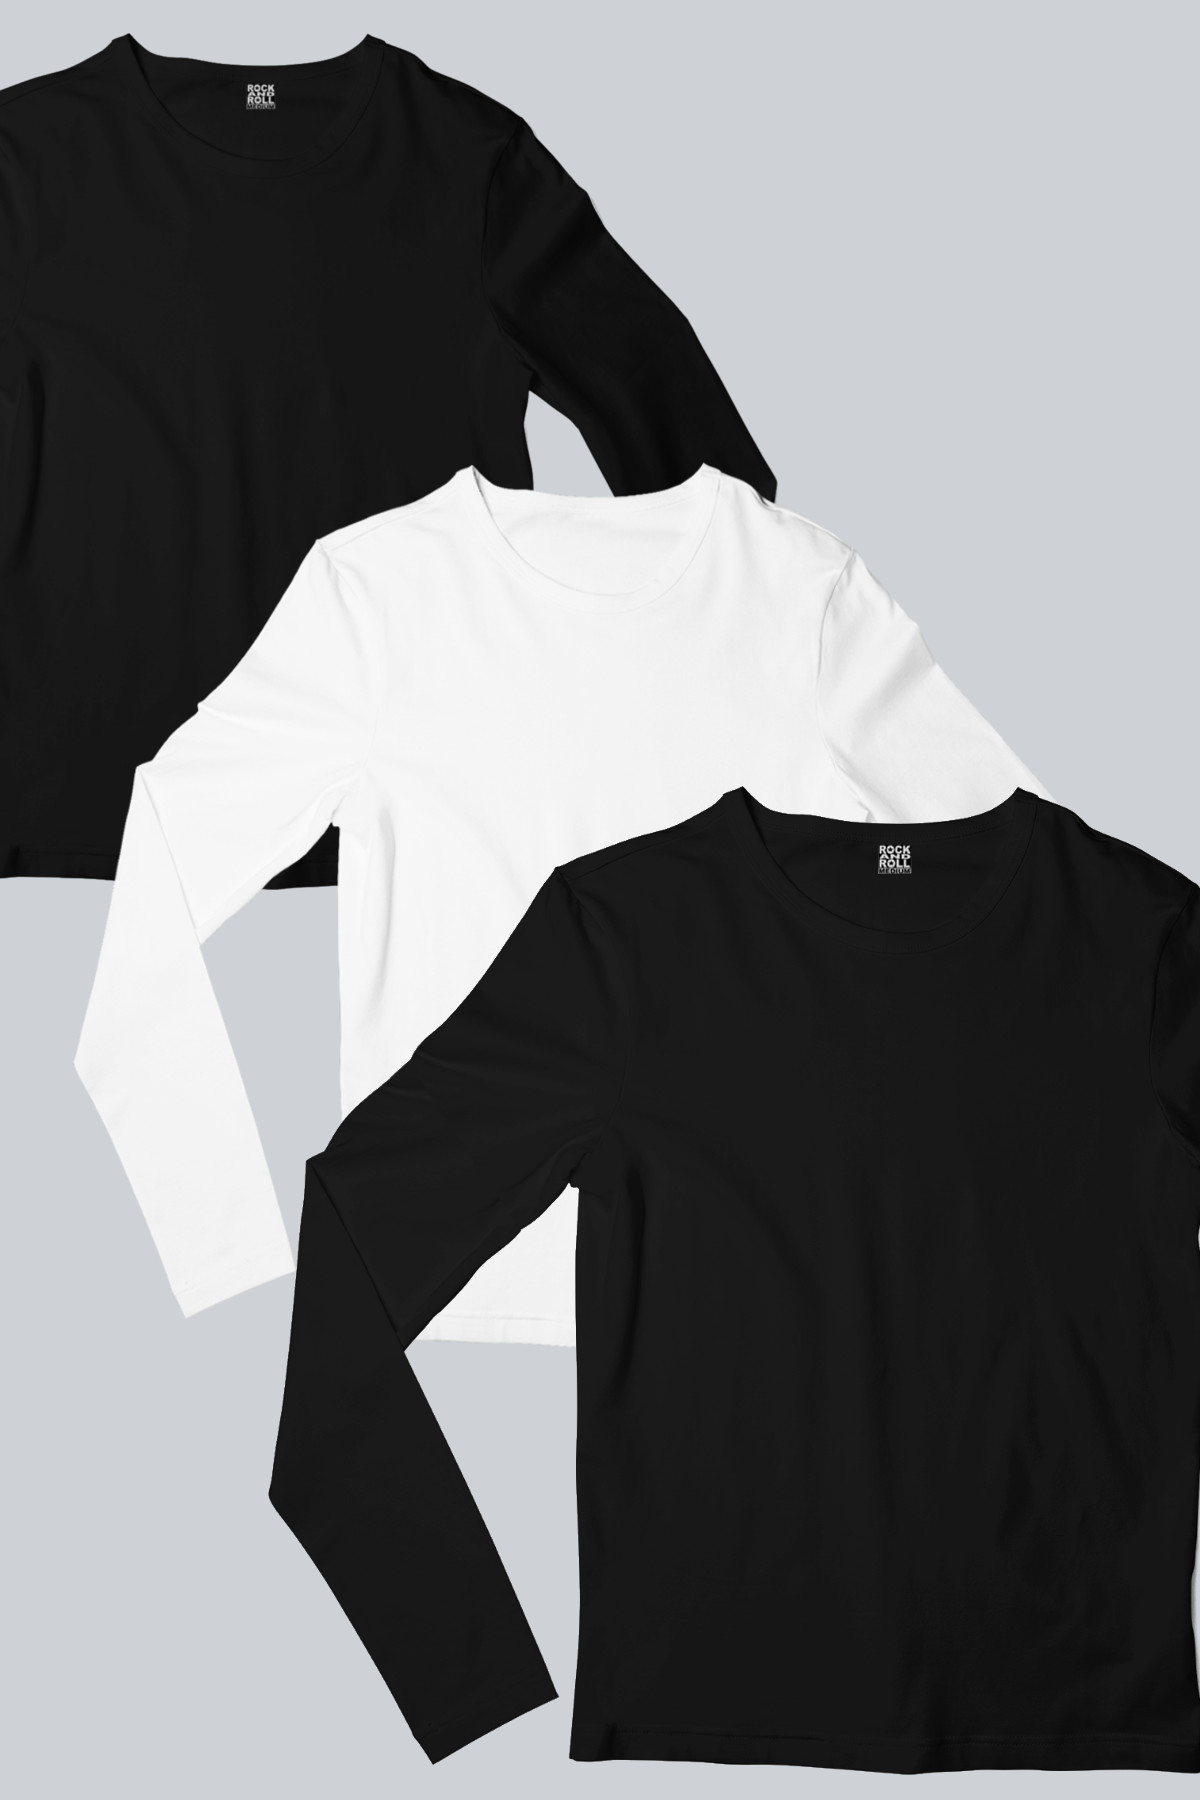 Düz, Baskısız 2 Siyah, 1 Beyaz Uzun Kollu Kadın T-shirt 3'lü Eko Paket